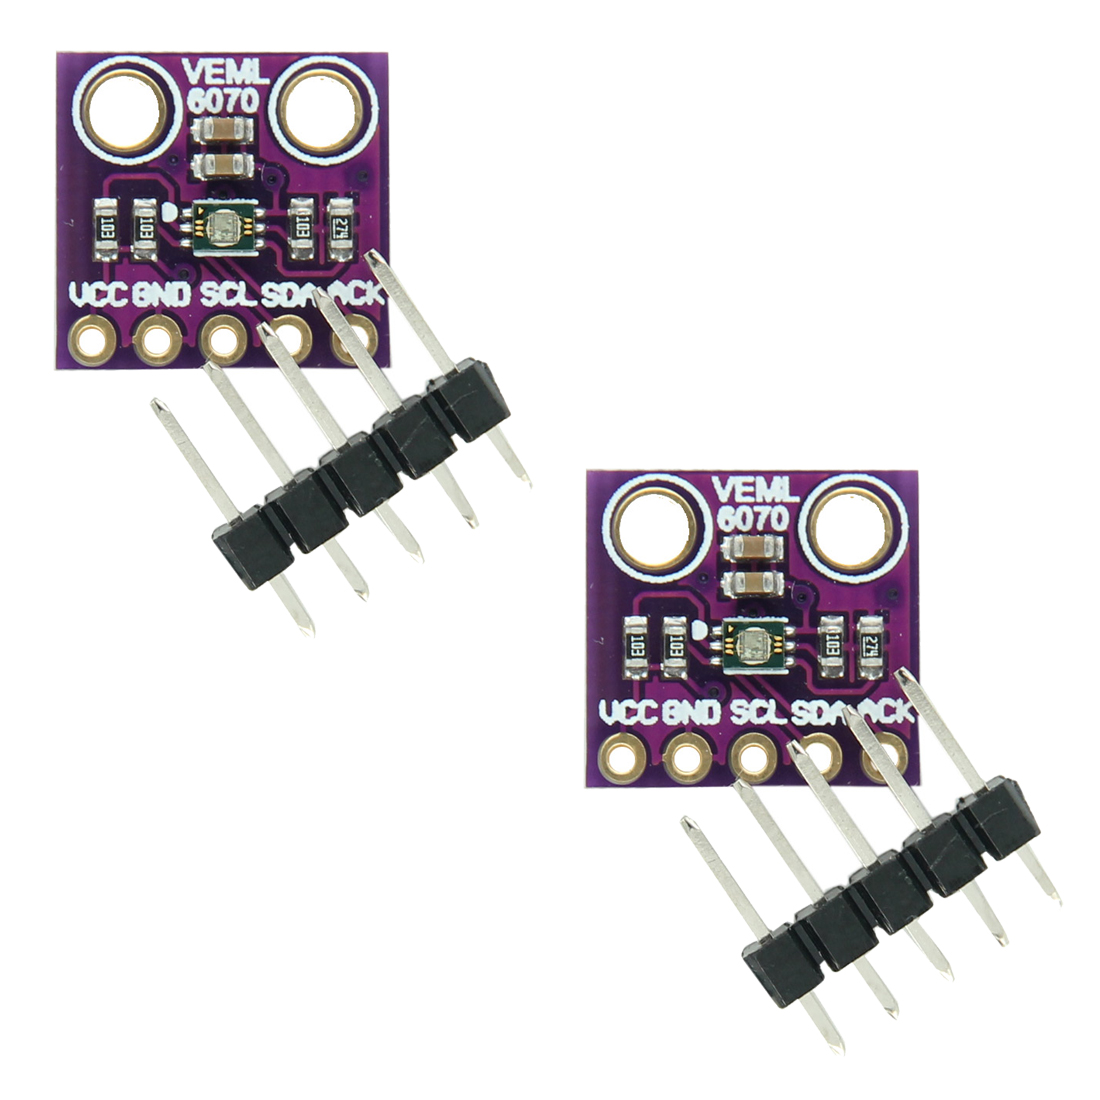 Veml 6070 UV Sensitivity Detection light Sensor for Arduino i2c GY-veml 6070 Ed 